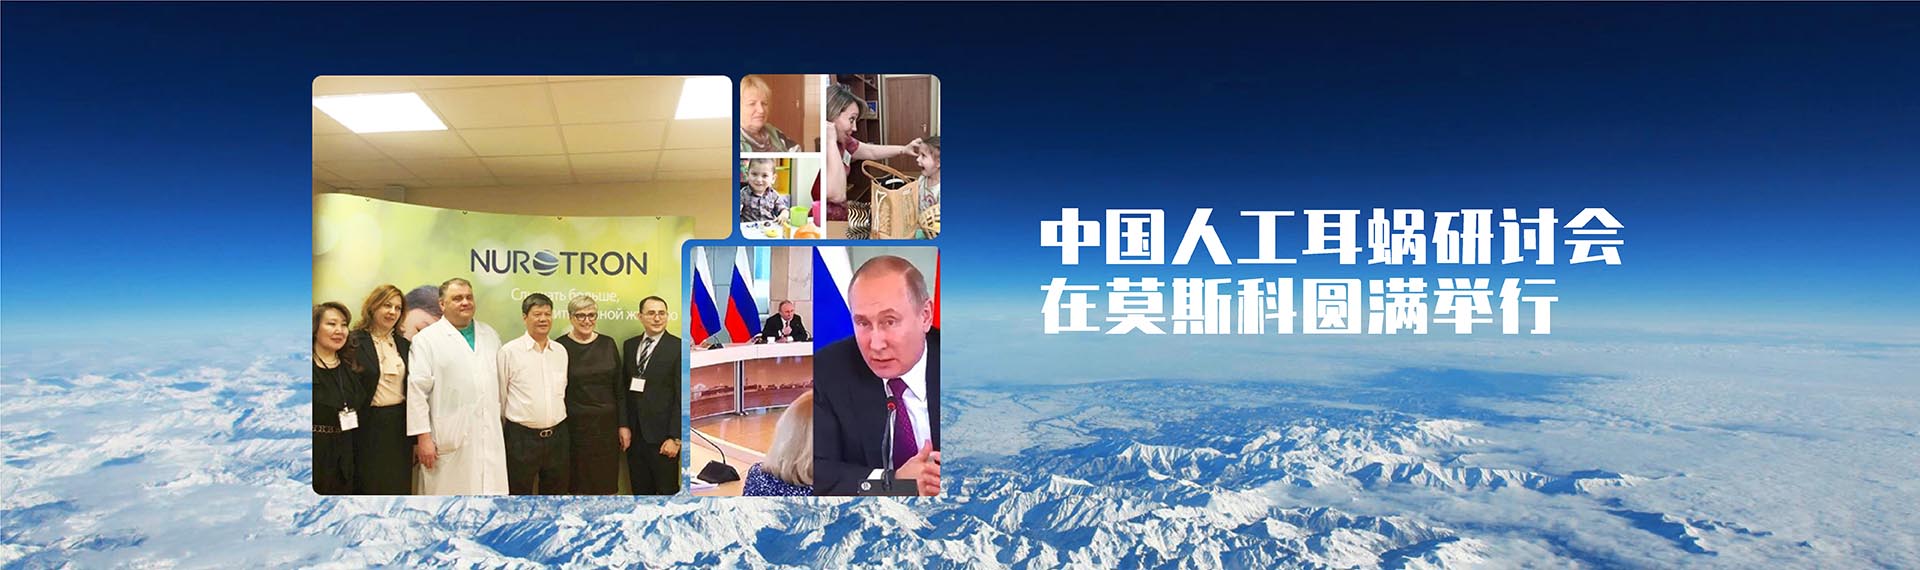 中国人工耳蜗研讨会在莫斯科圆满举行